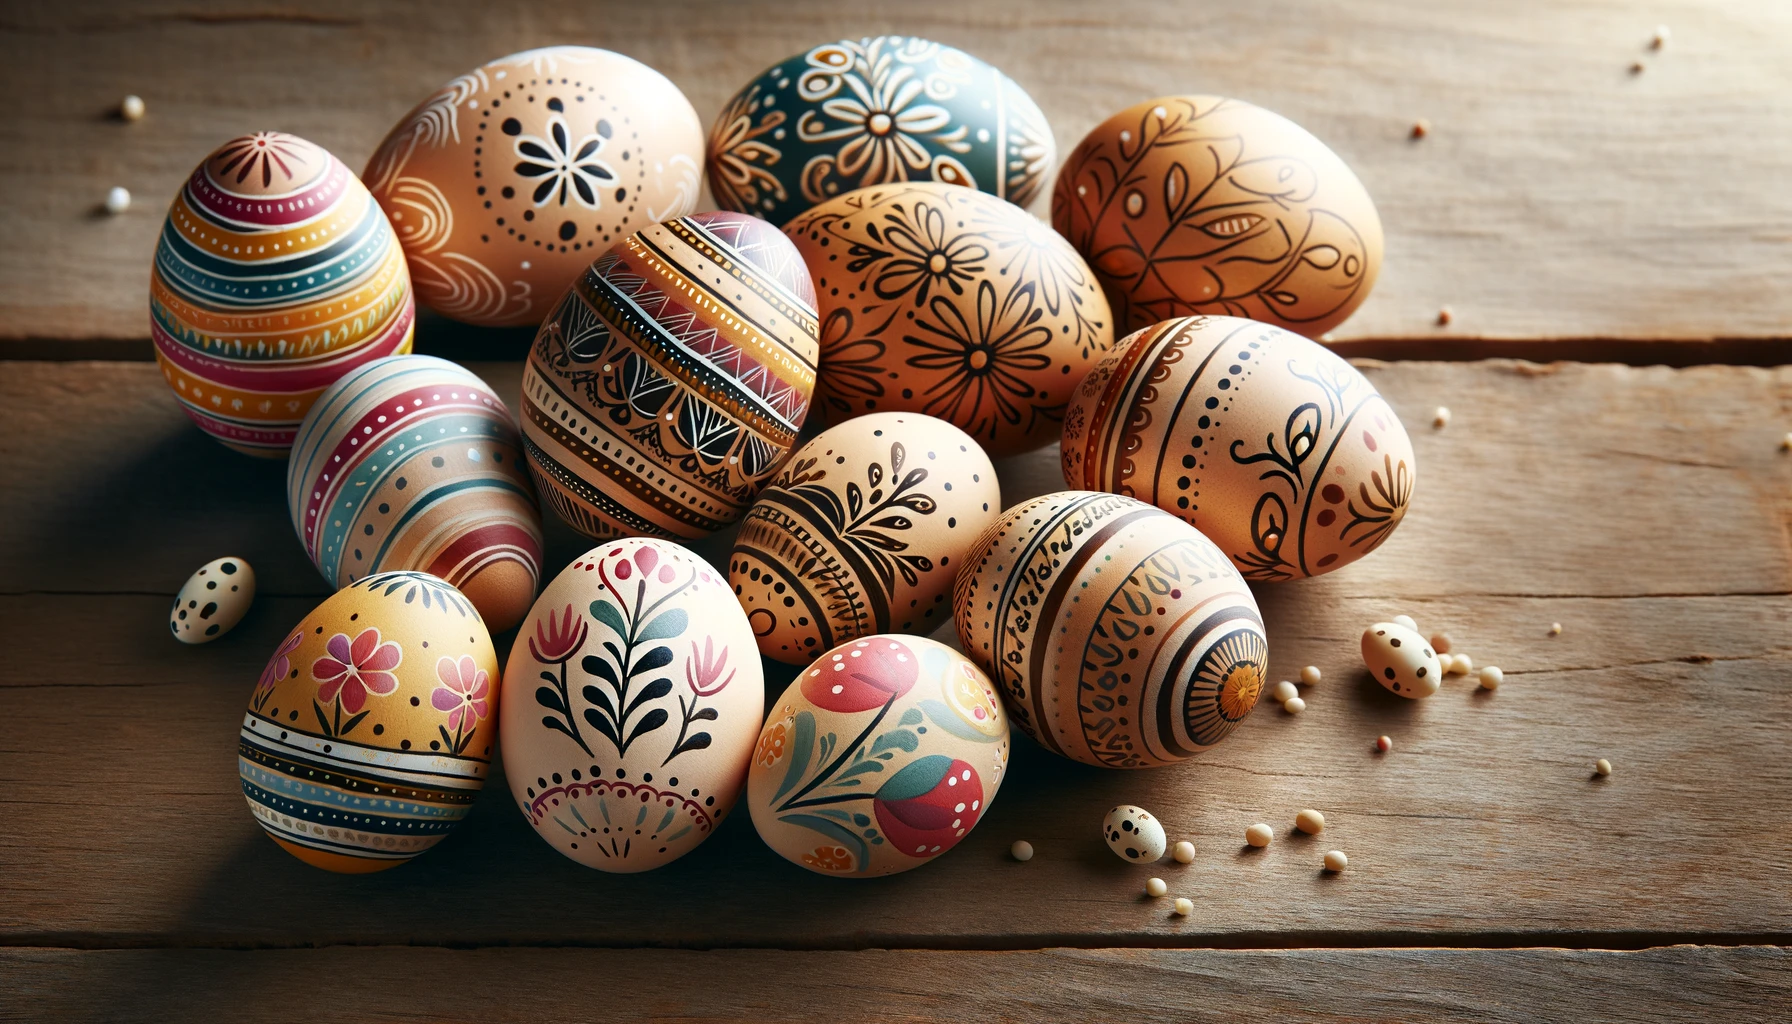 Ornate Motifs on Easter Egg